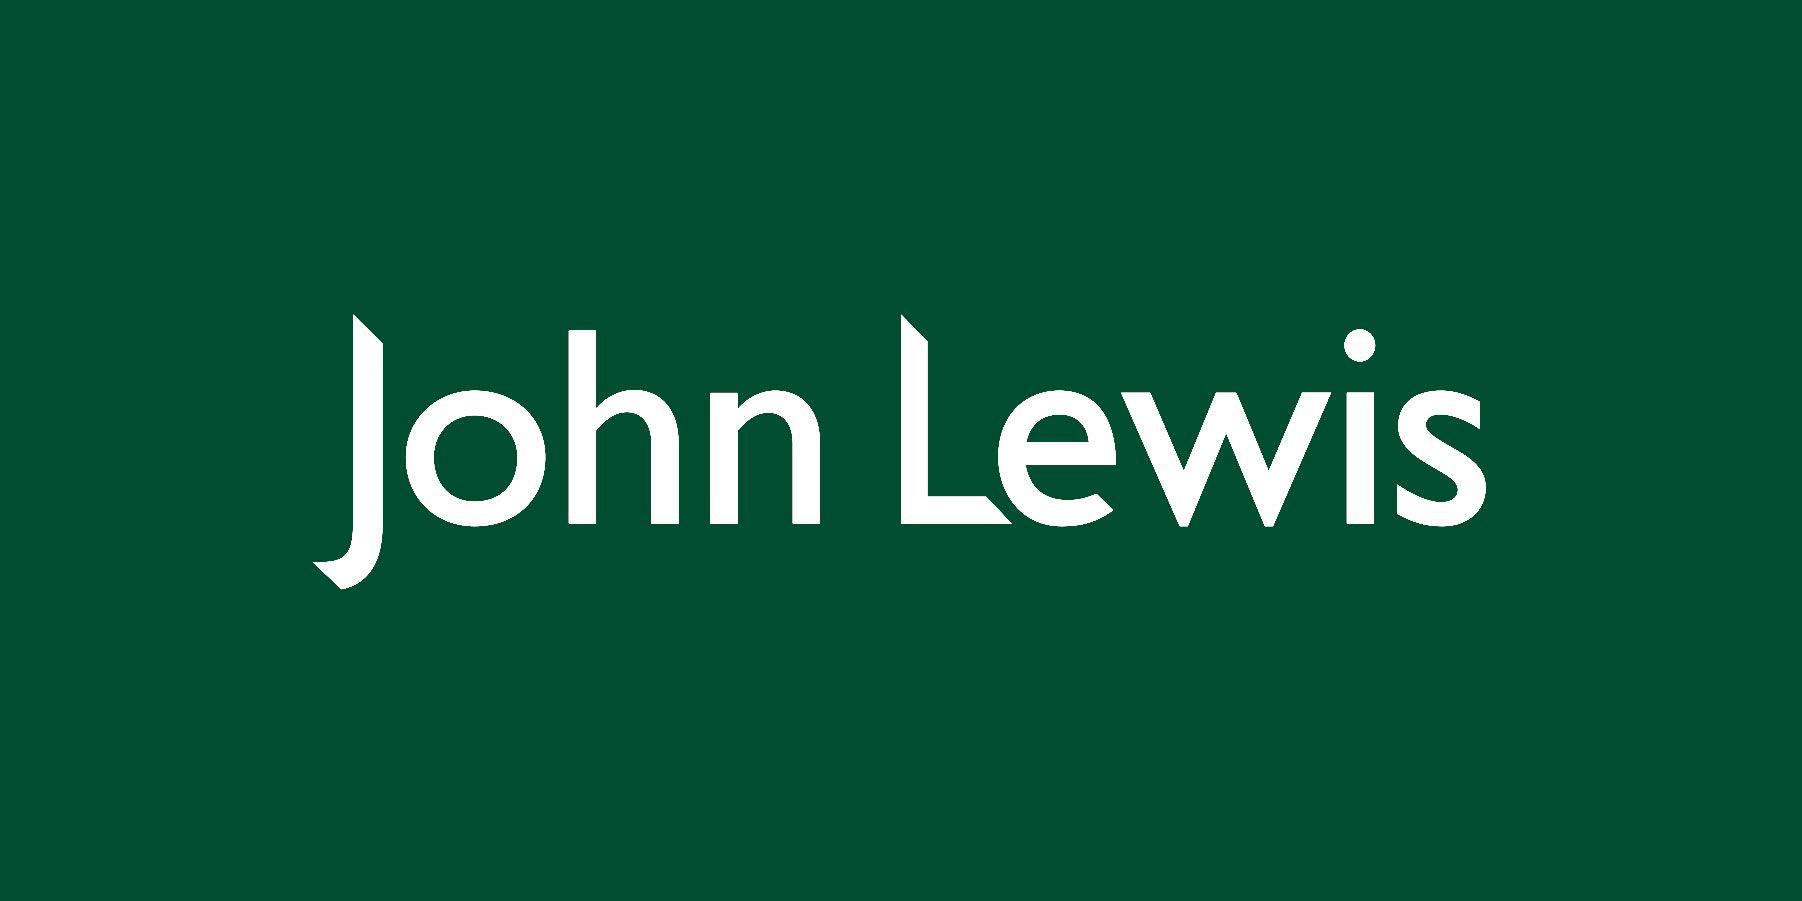 Lewis Logo - John Lewis - Fishpie